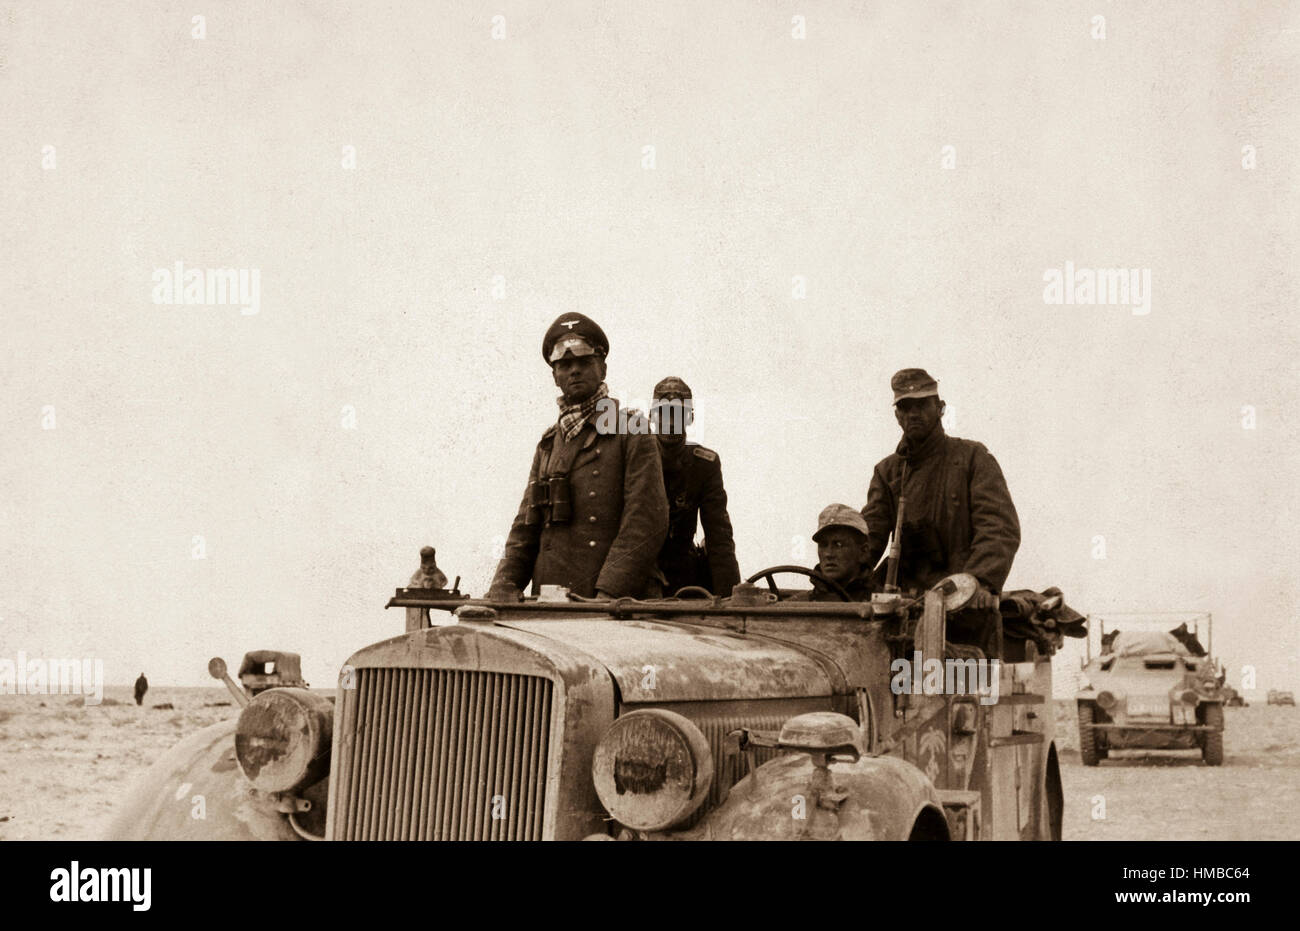 Rommel général bei der 15. Panzer-Division zwischen Tobruk und Sidi Omar. Rommel général avec la 15e Division Panzer entre Tobruk et Sidi Omar. La Libye, le 24 novembre, 1941 ou. Banque D'Images